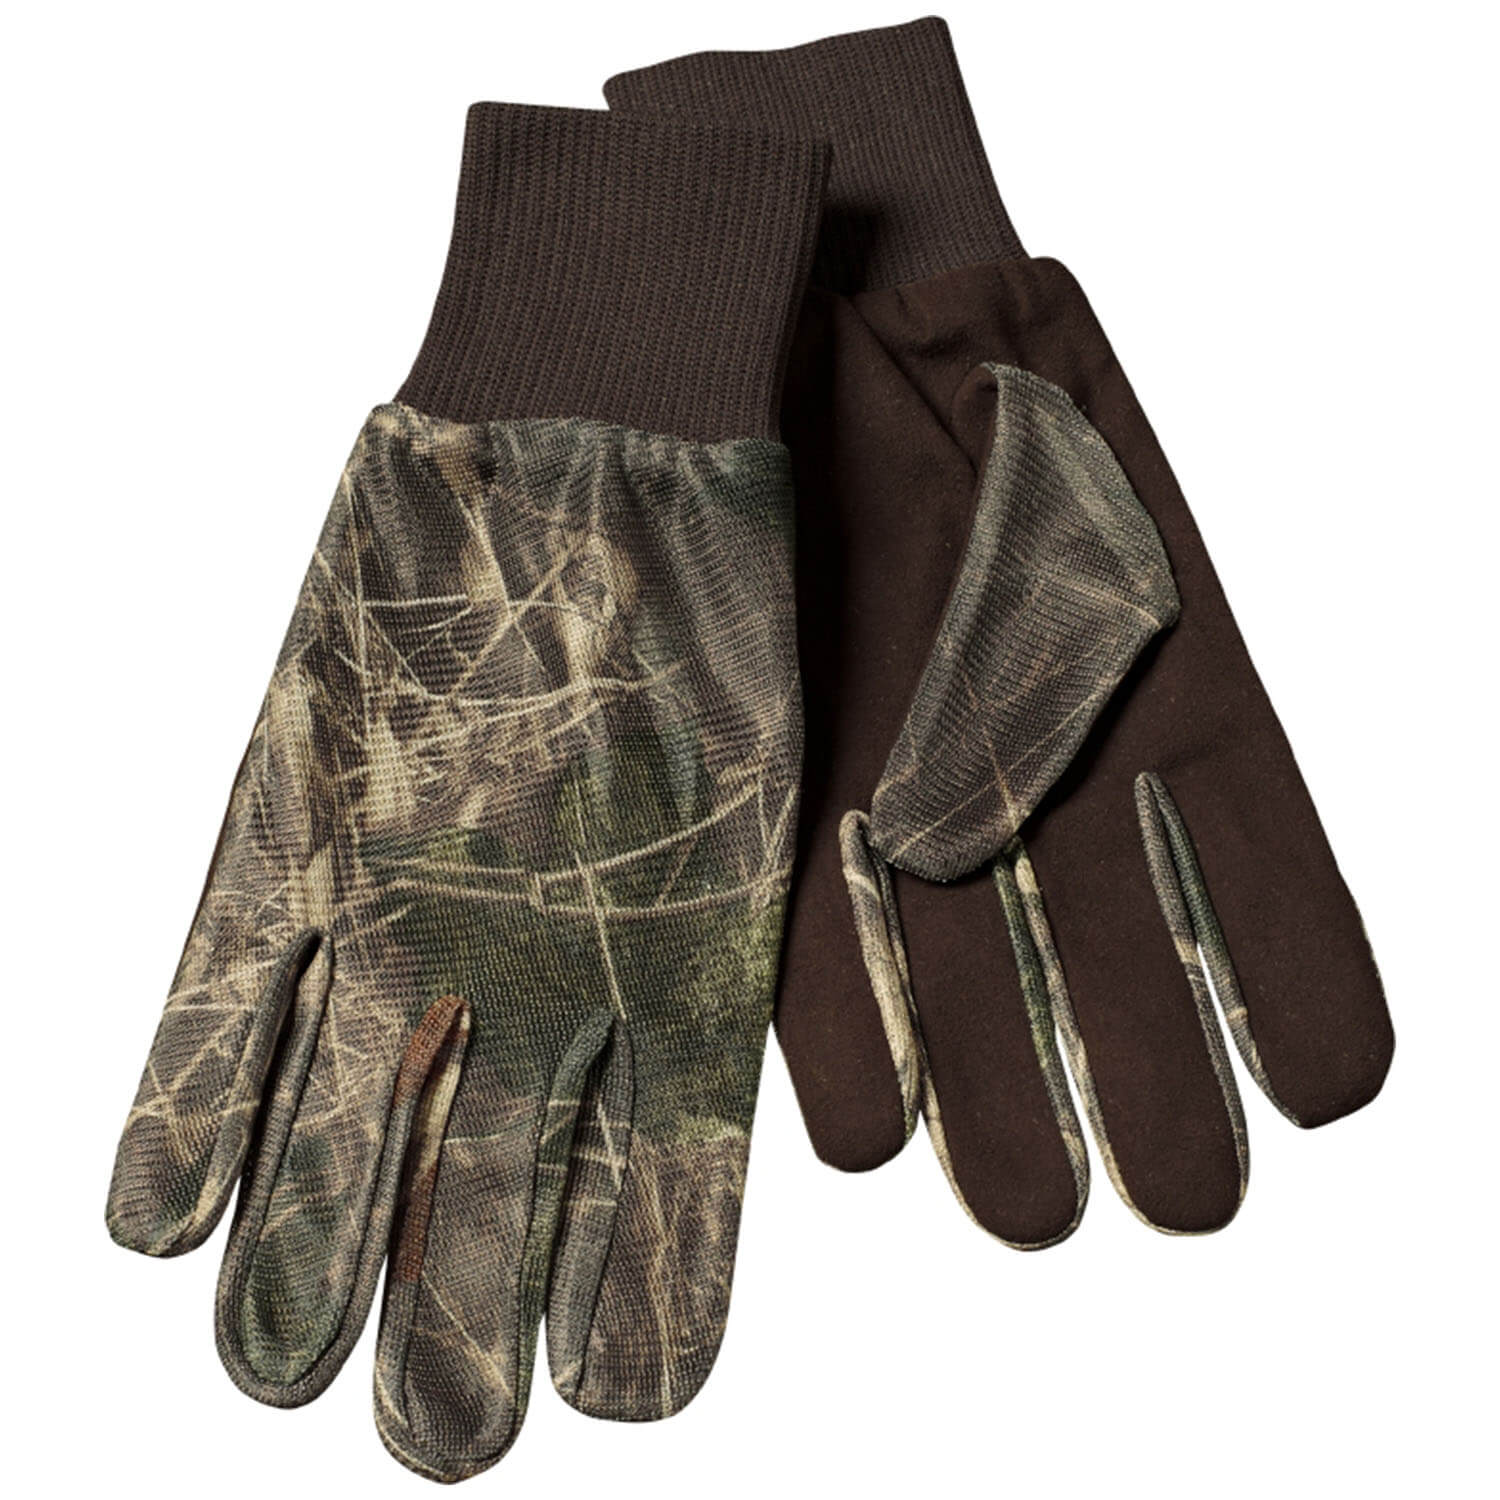  Seeland Camouflage handschoenen - Handschoenen